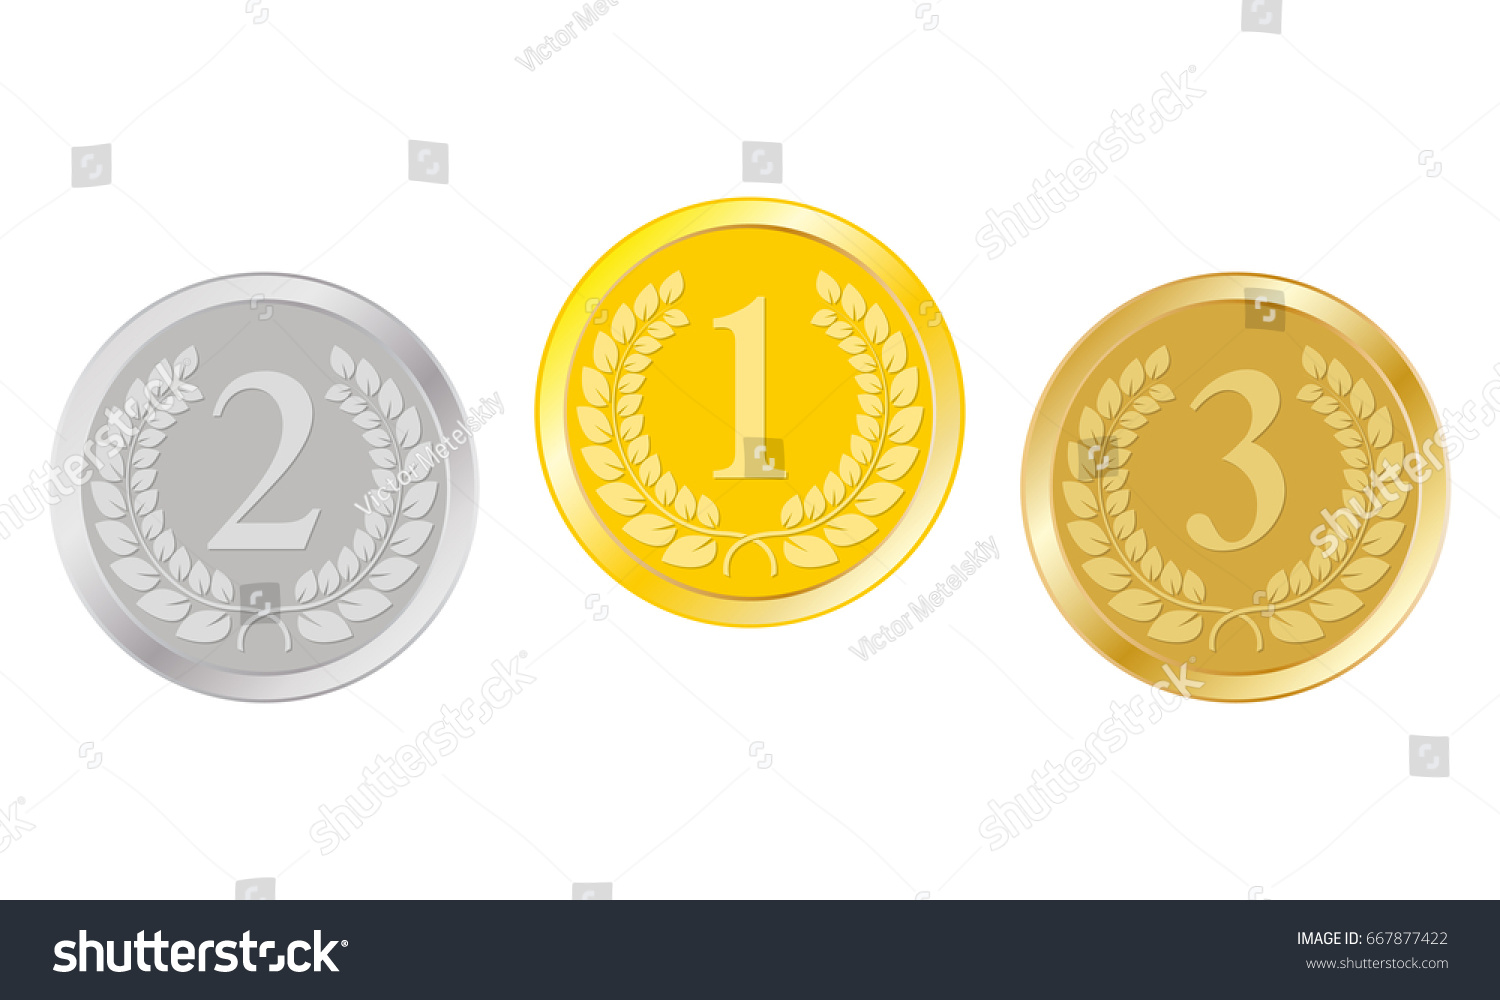 金 銀 銅のメダル 1位 2位 3位の賞 チャンピオンと優勝賞 ベクターイラスト のベクター画像素材 ロイヤリティフリー